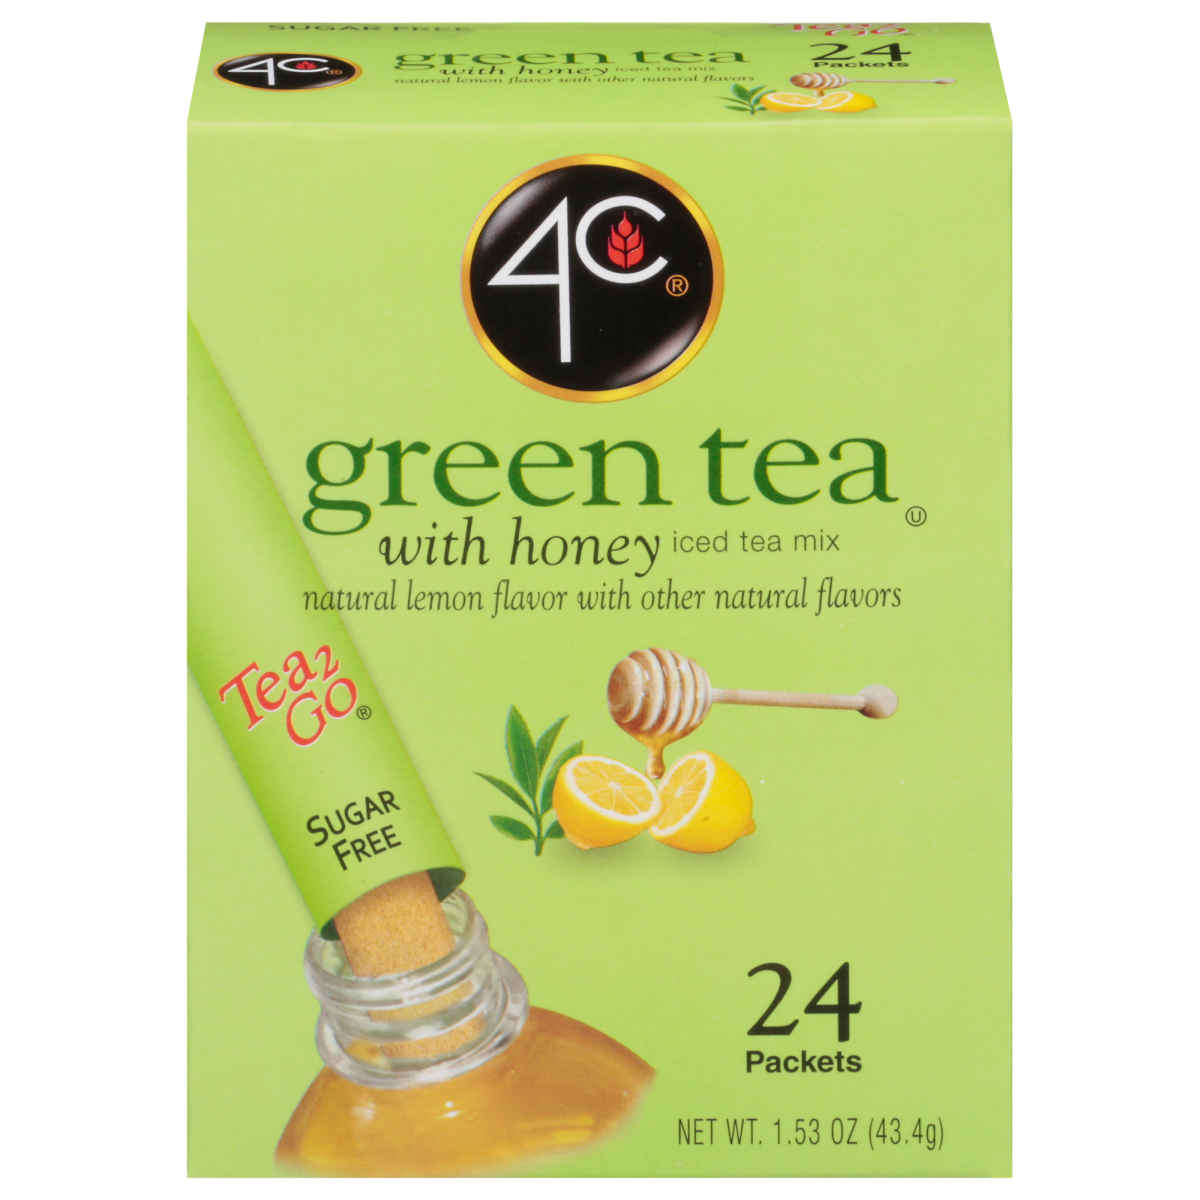 slide 1 of 4, 4C Green Tea Antioxidant With Honey & Natural Lemon, 24 ct